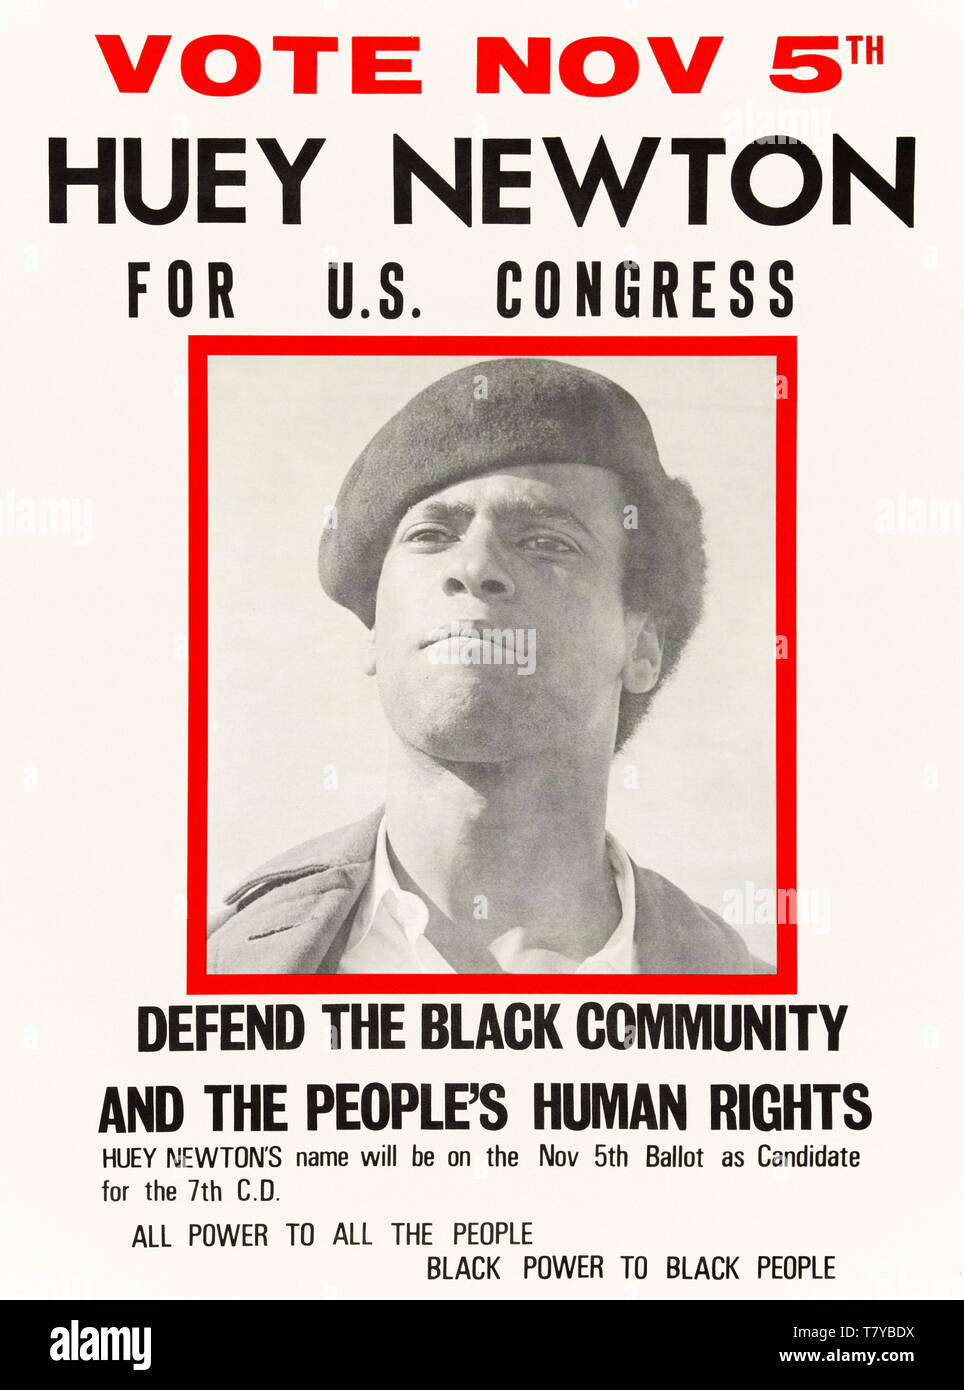 Voter 5 novembre Huey Newton pour Congrès 1968 affiche pour Huey Percy Newton (1942-1989) pour la paix et la liberté. Voir la description pour plus d'informations. Banque D'Images